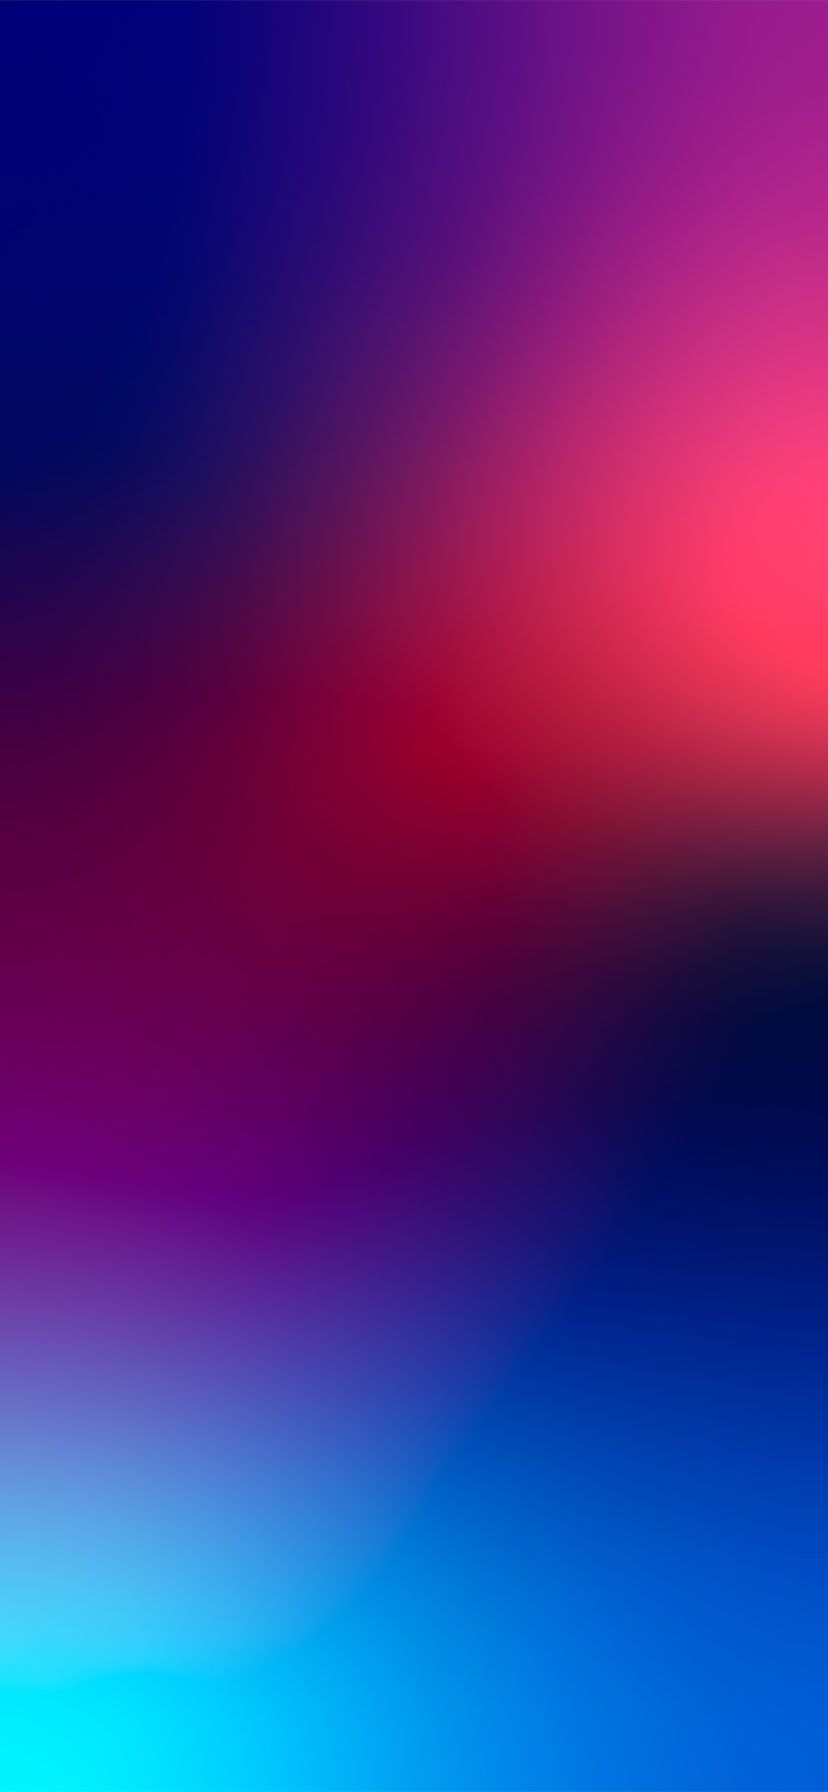 Hình nền iPhone Gradient sắc màu mượt mà sẽ cho bạn trải nghiệm vô cùng độc đáo và thu hút đối với chiếc điện thoại của bạn. Thưởng thức những màu sắc chuyển động tinh tế của Gradient, bạn sẽ được chìm đắm trong không gian đẹp mắt và cực kỳ độc đáo. 